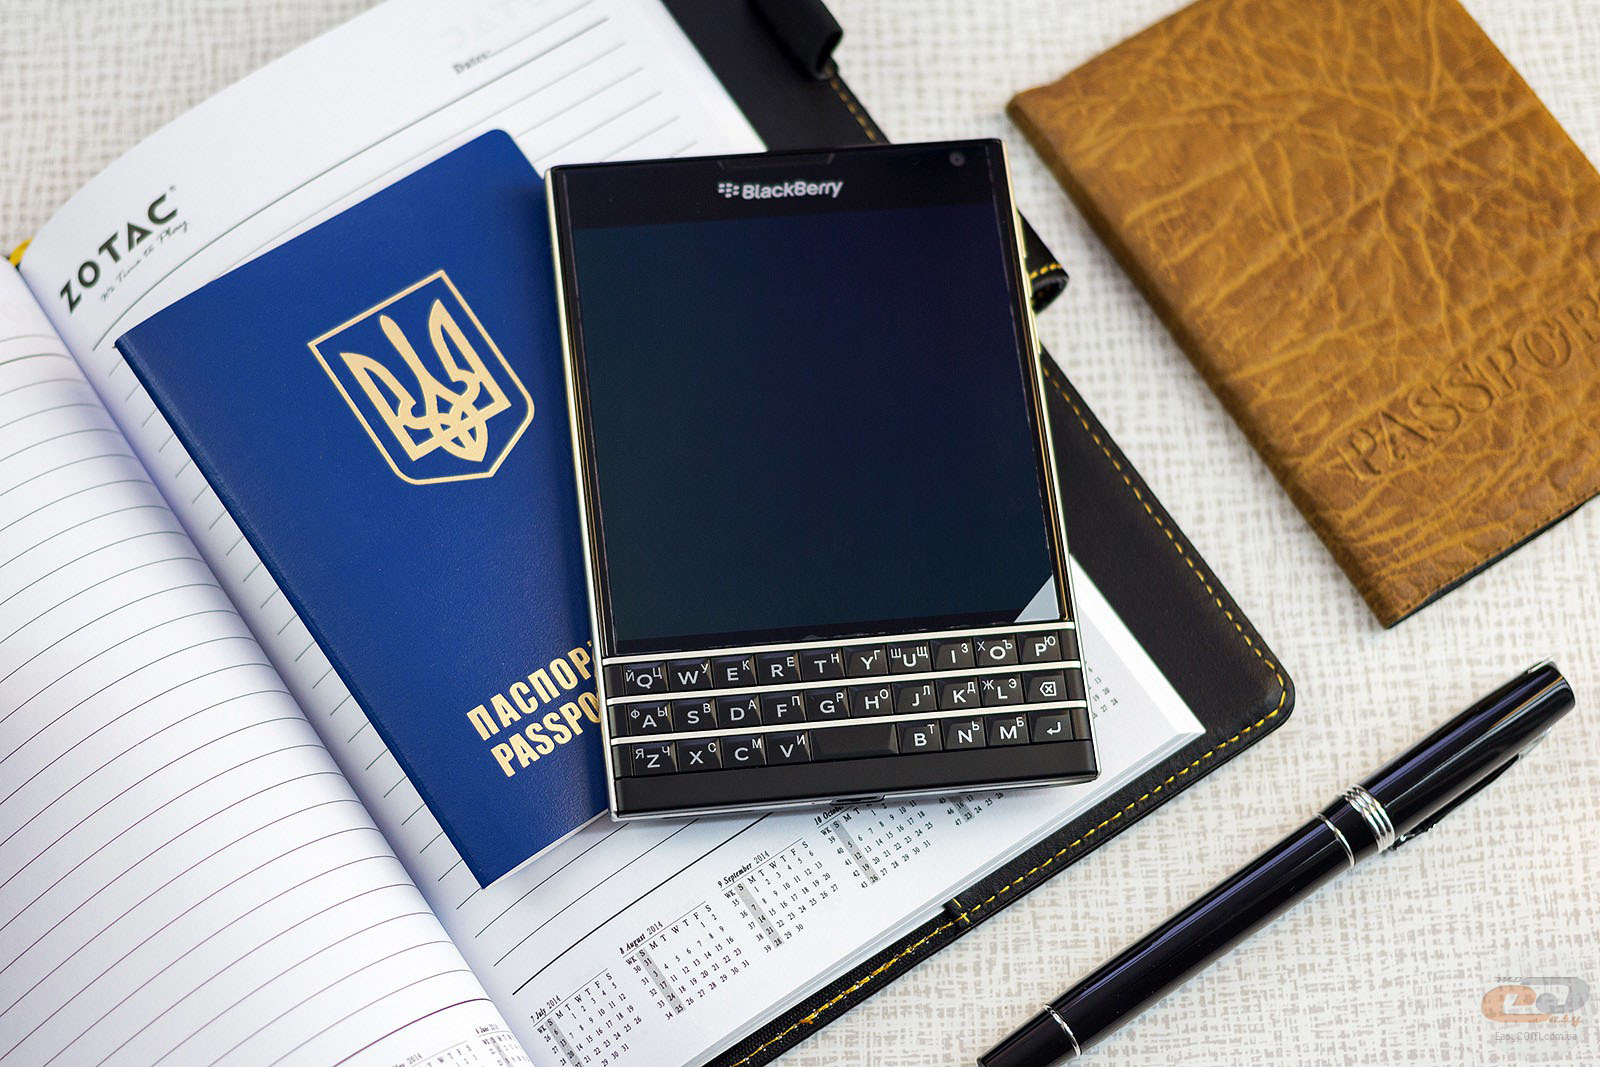 Blackberry ha presentado Oficialmente su nuevo Smartphone Blackberry Passport